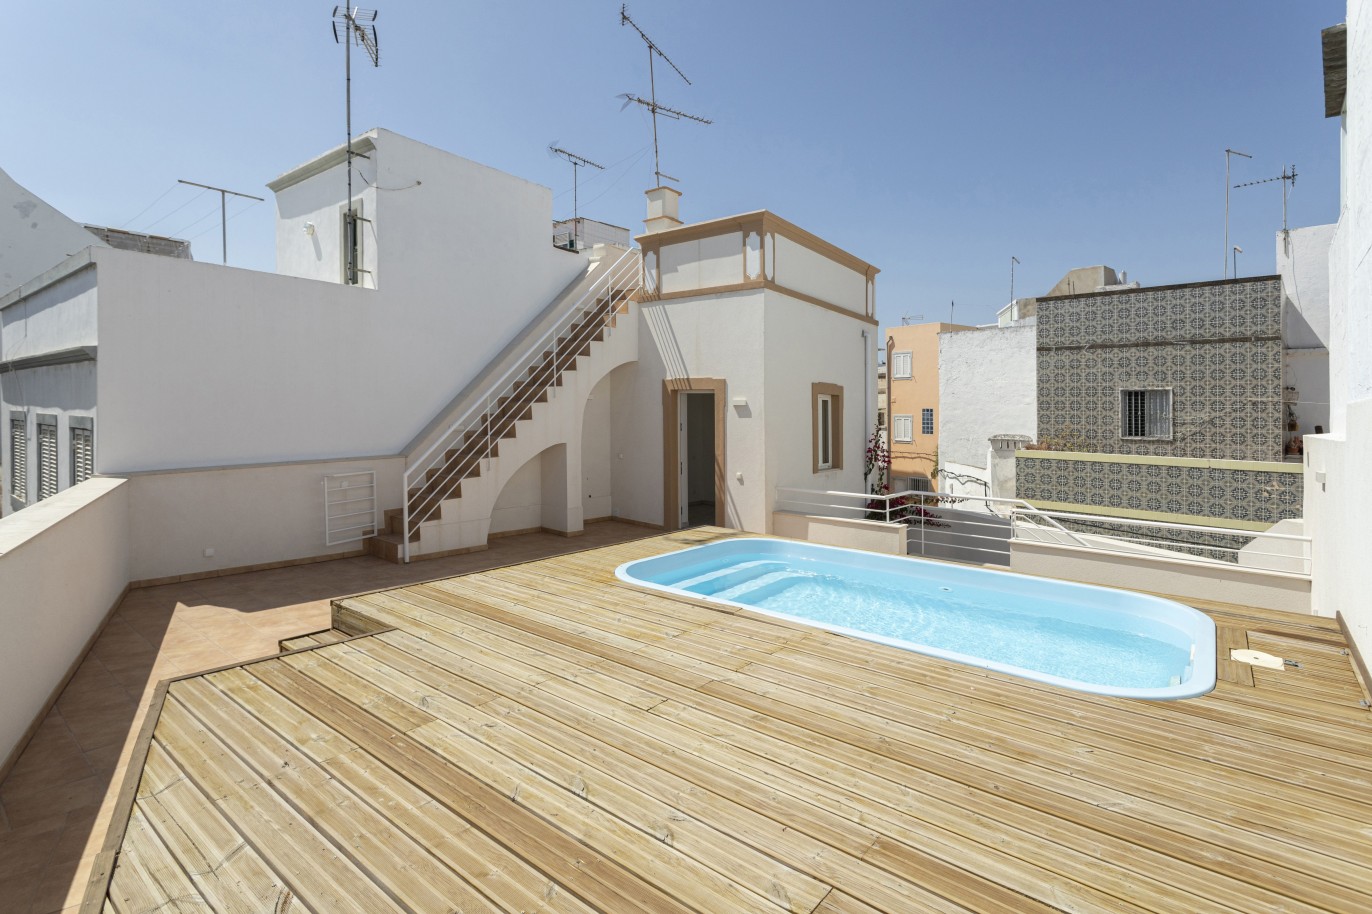 Renovierte Villa mit 3 Schlafzimmern zu verkaufen in der Innenstadt von Olhão, Algarve_227460